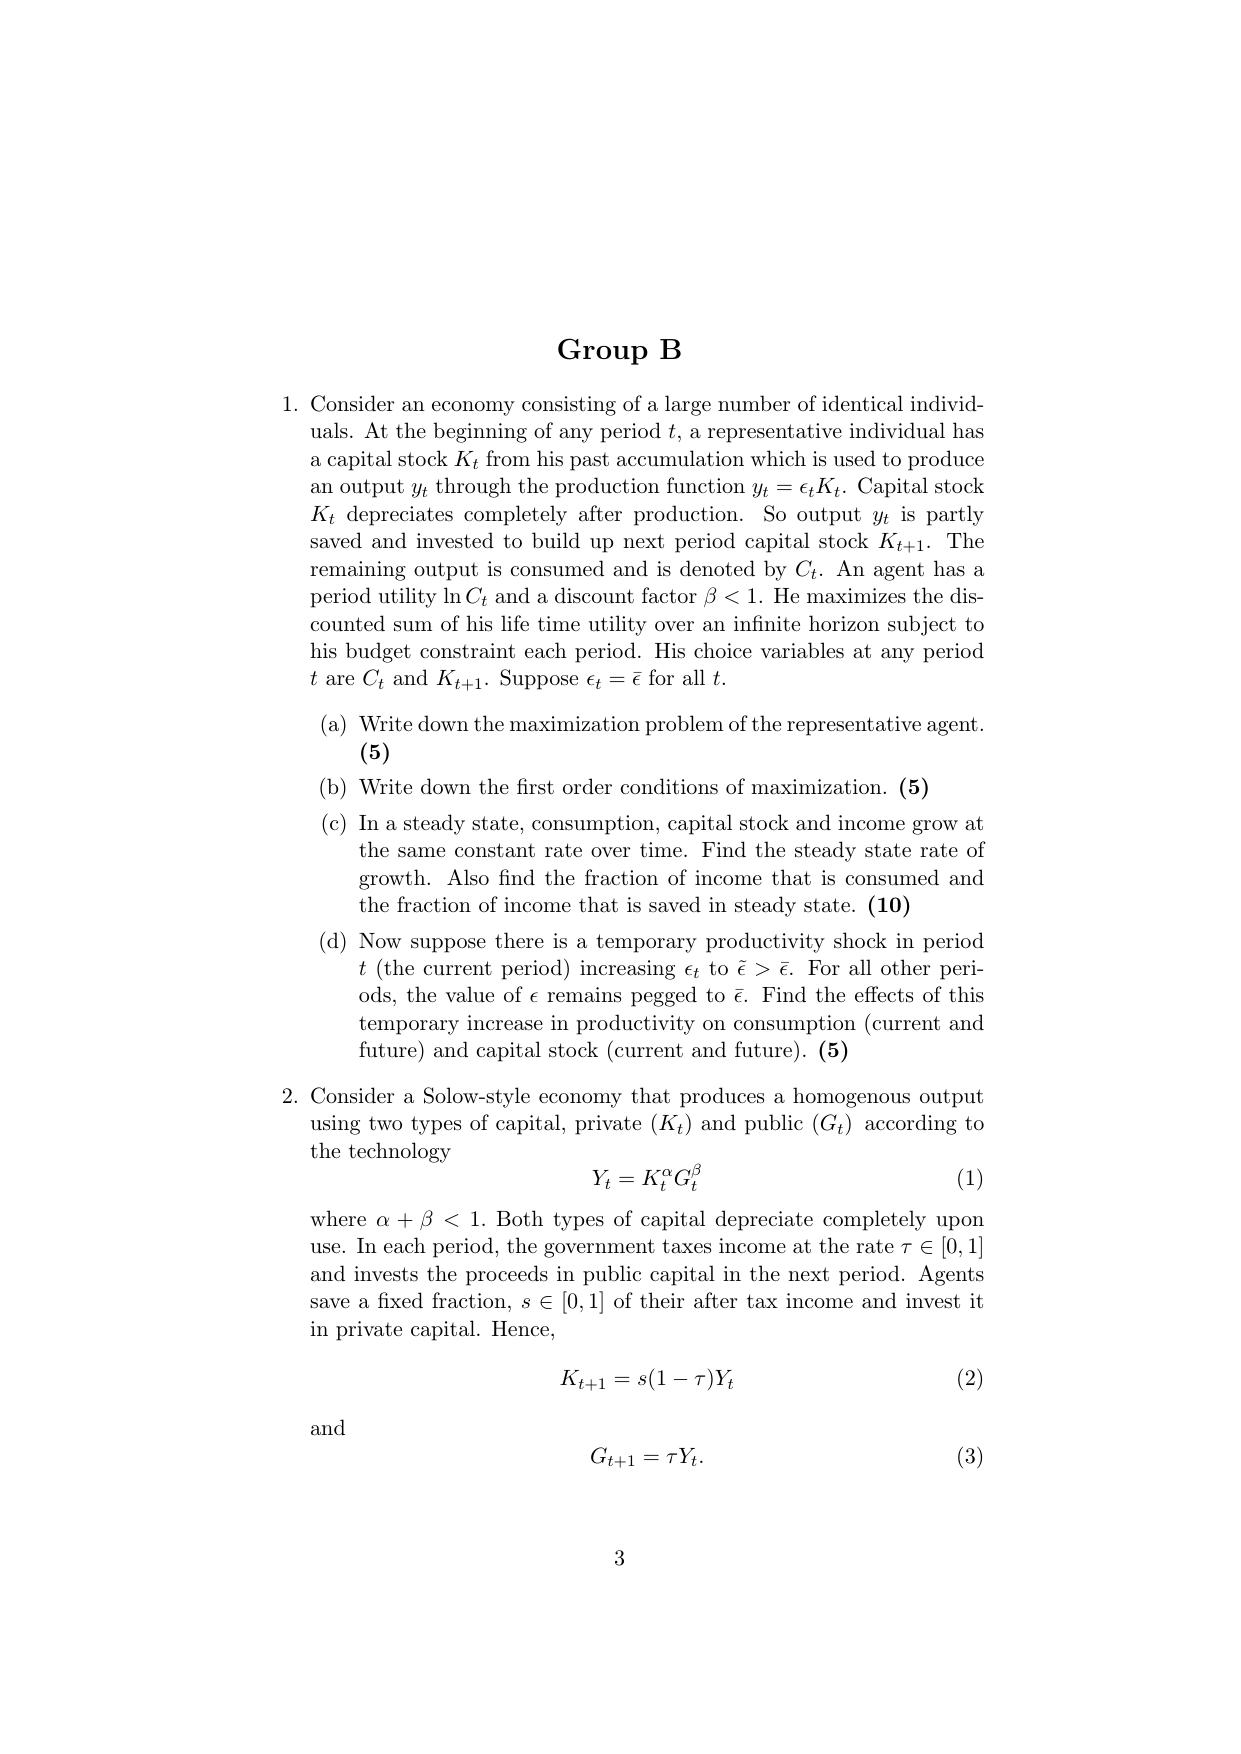 ISI Admission Test JRF in Quantitative Economics QEB 2019 Sample Paper - Page 3